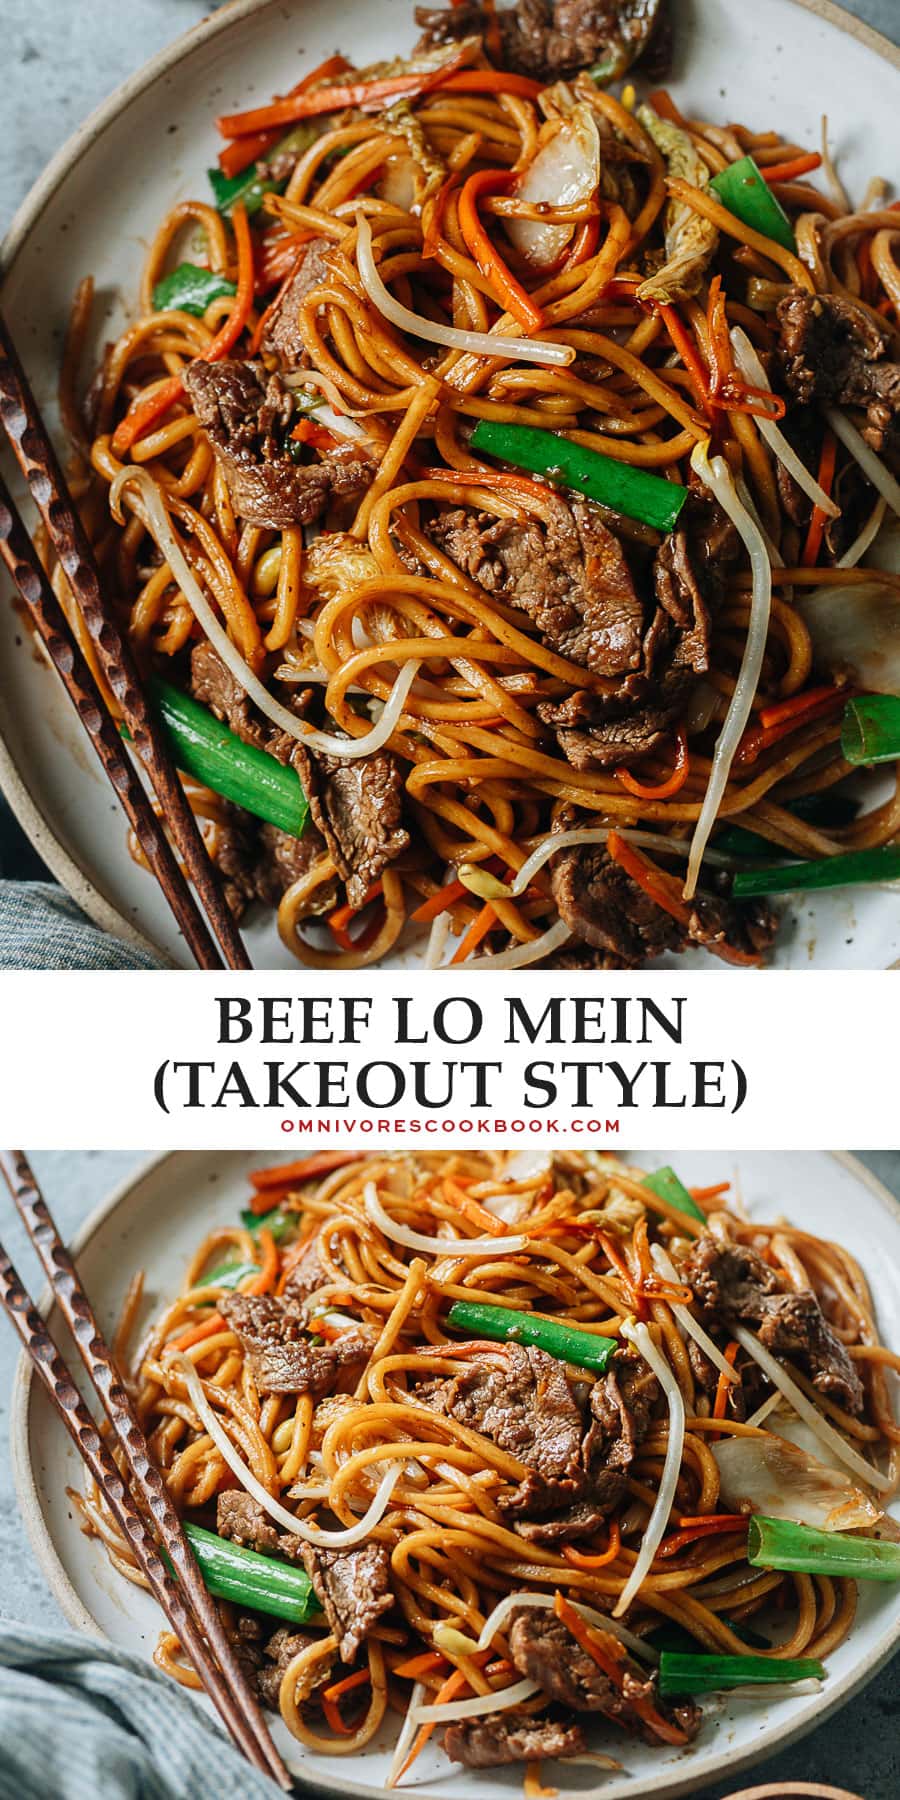 Beef Lo Mein - Omnivore's Cookbook